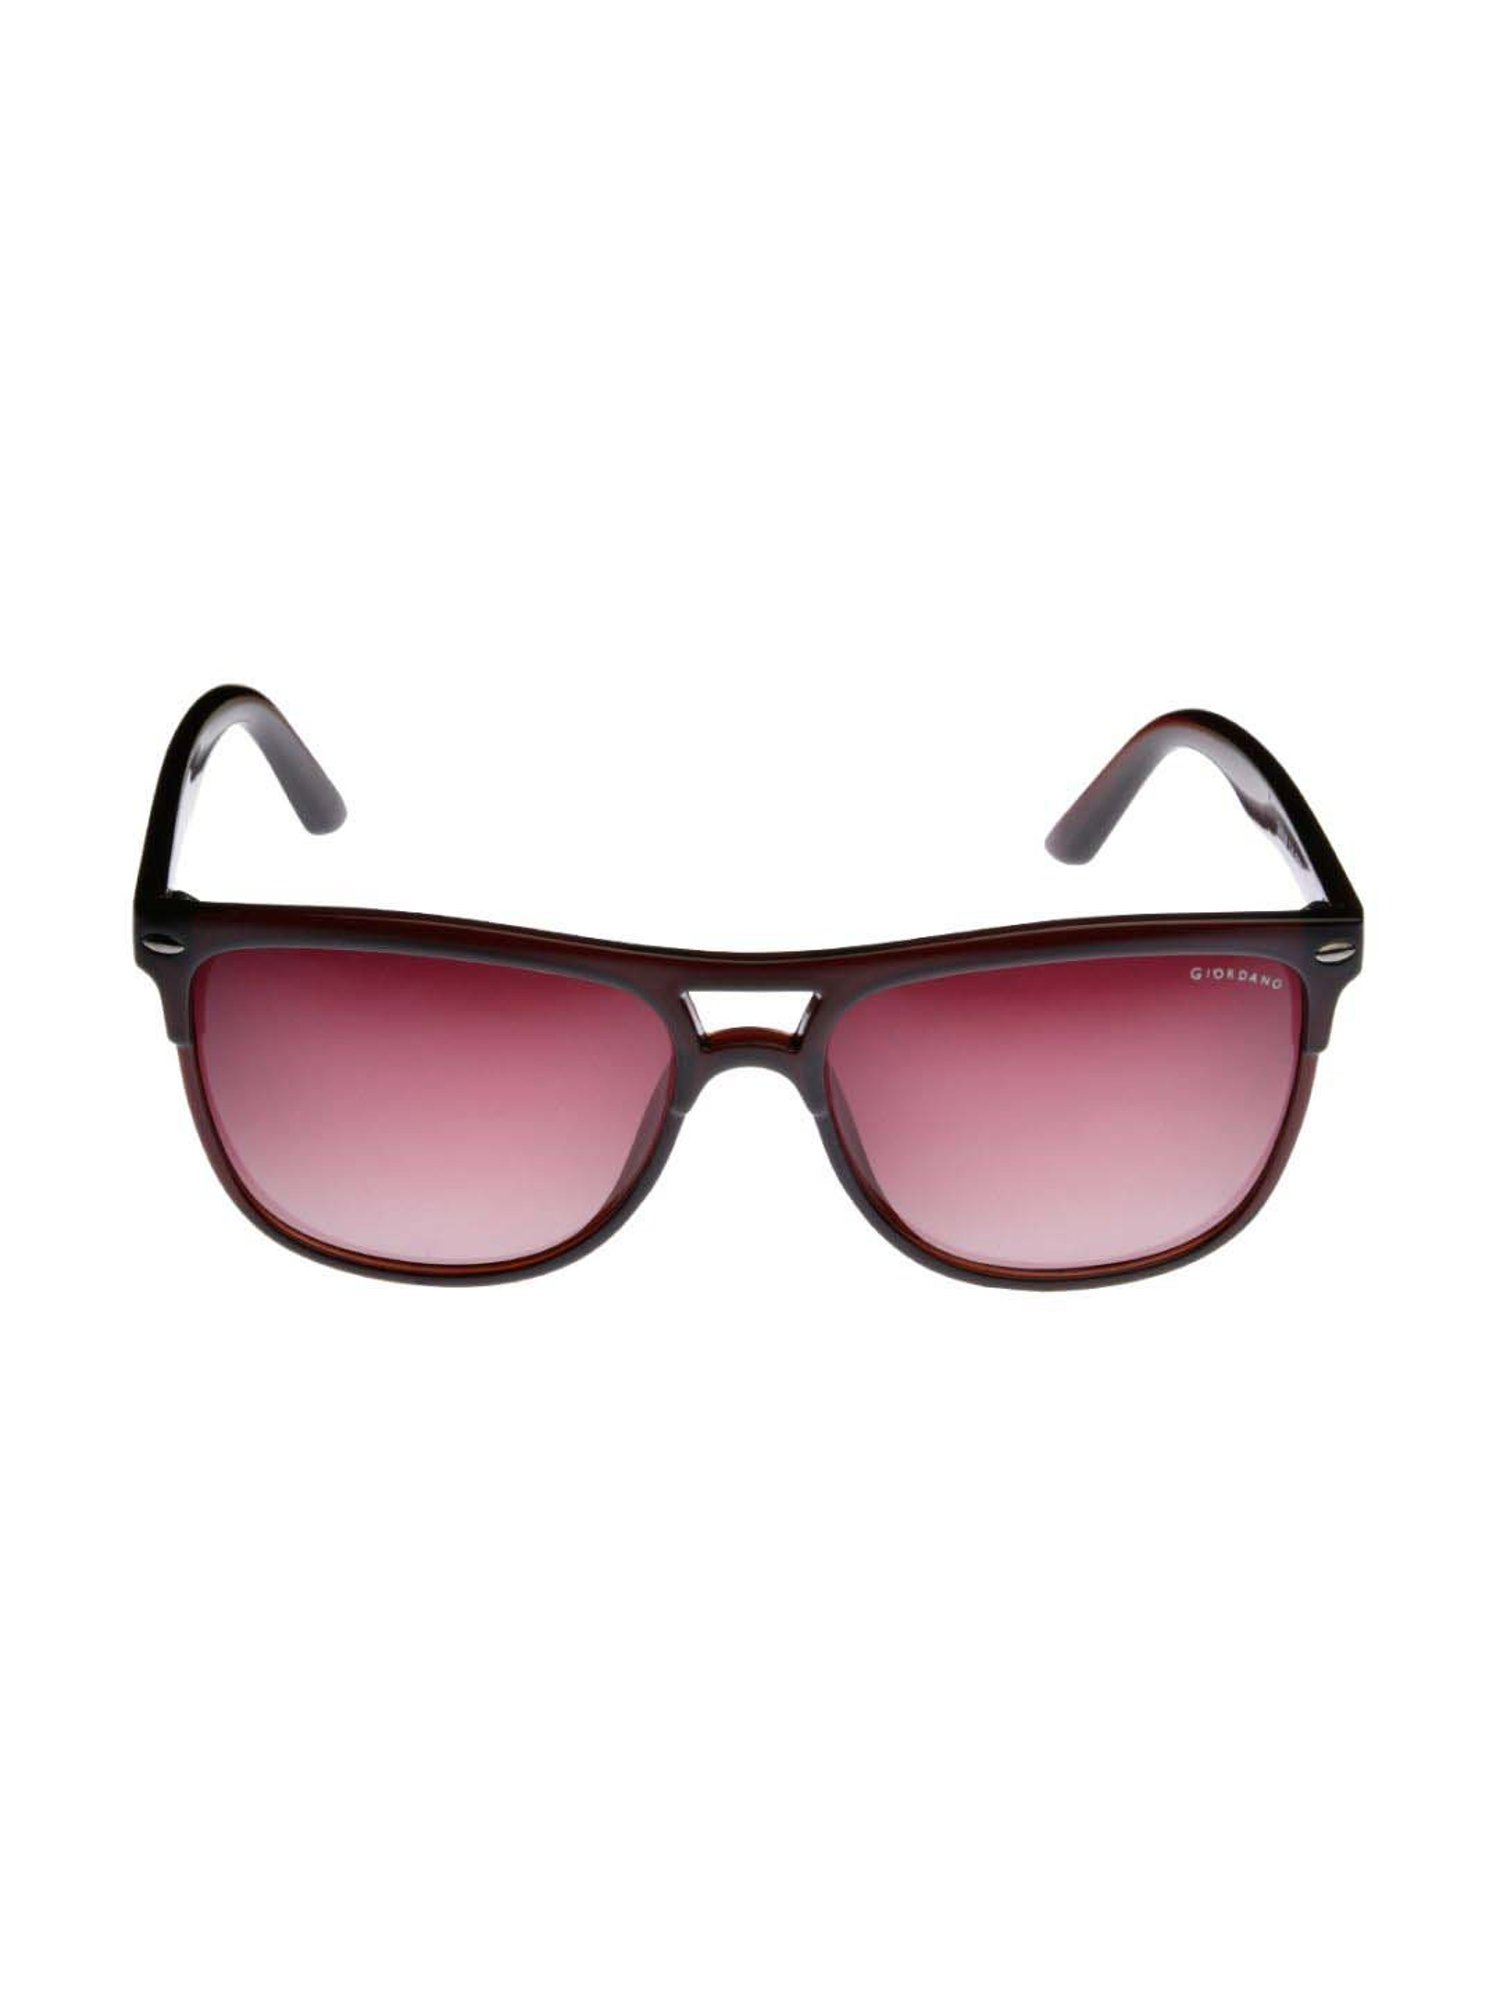 Buy Emporio Armani 0EA4129 Grey Lens Square Male Sunglasses online